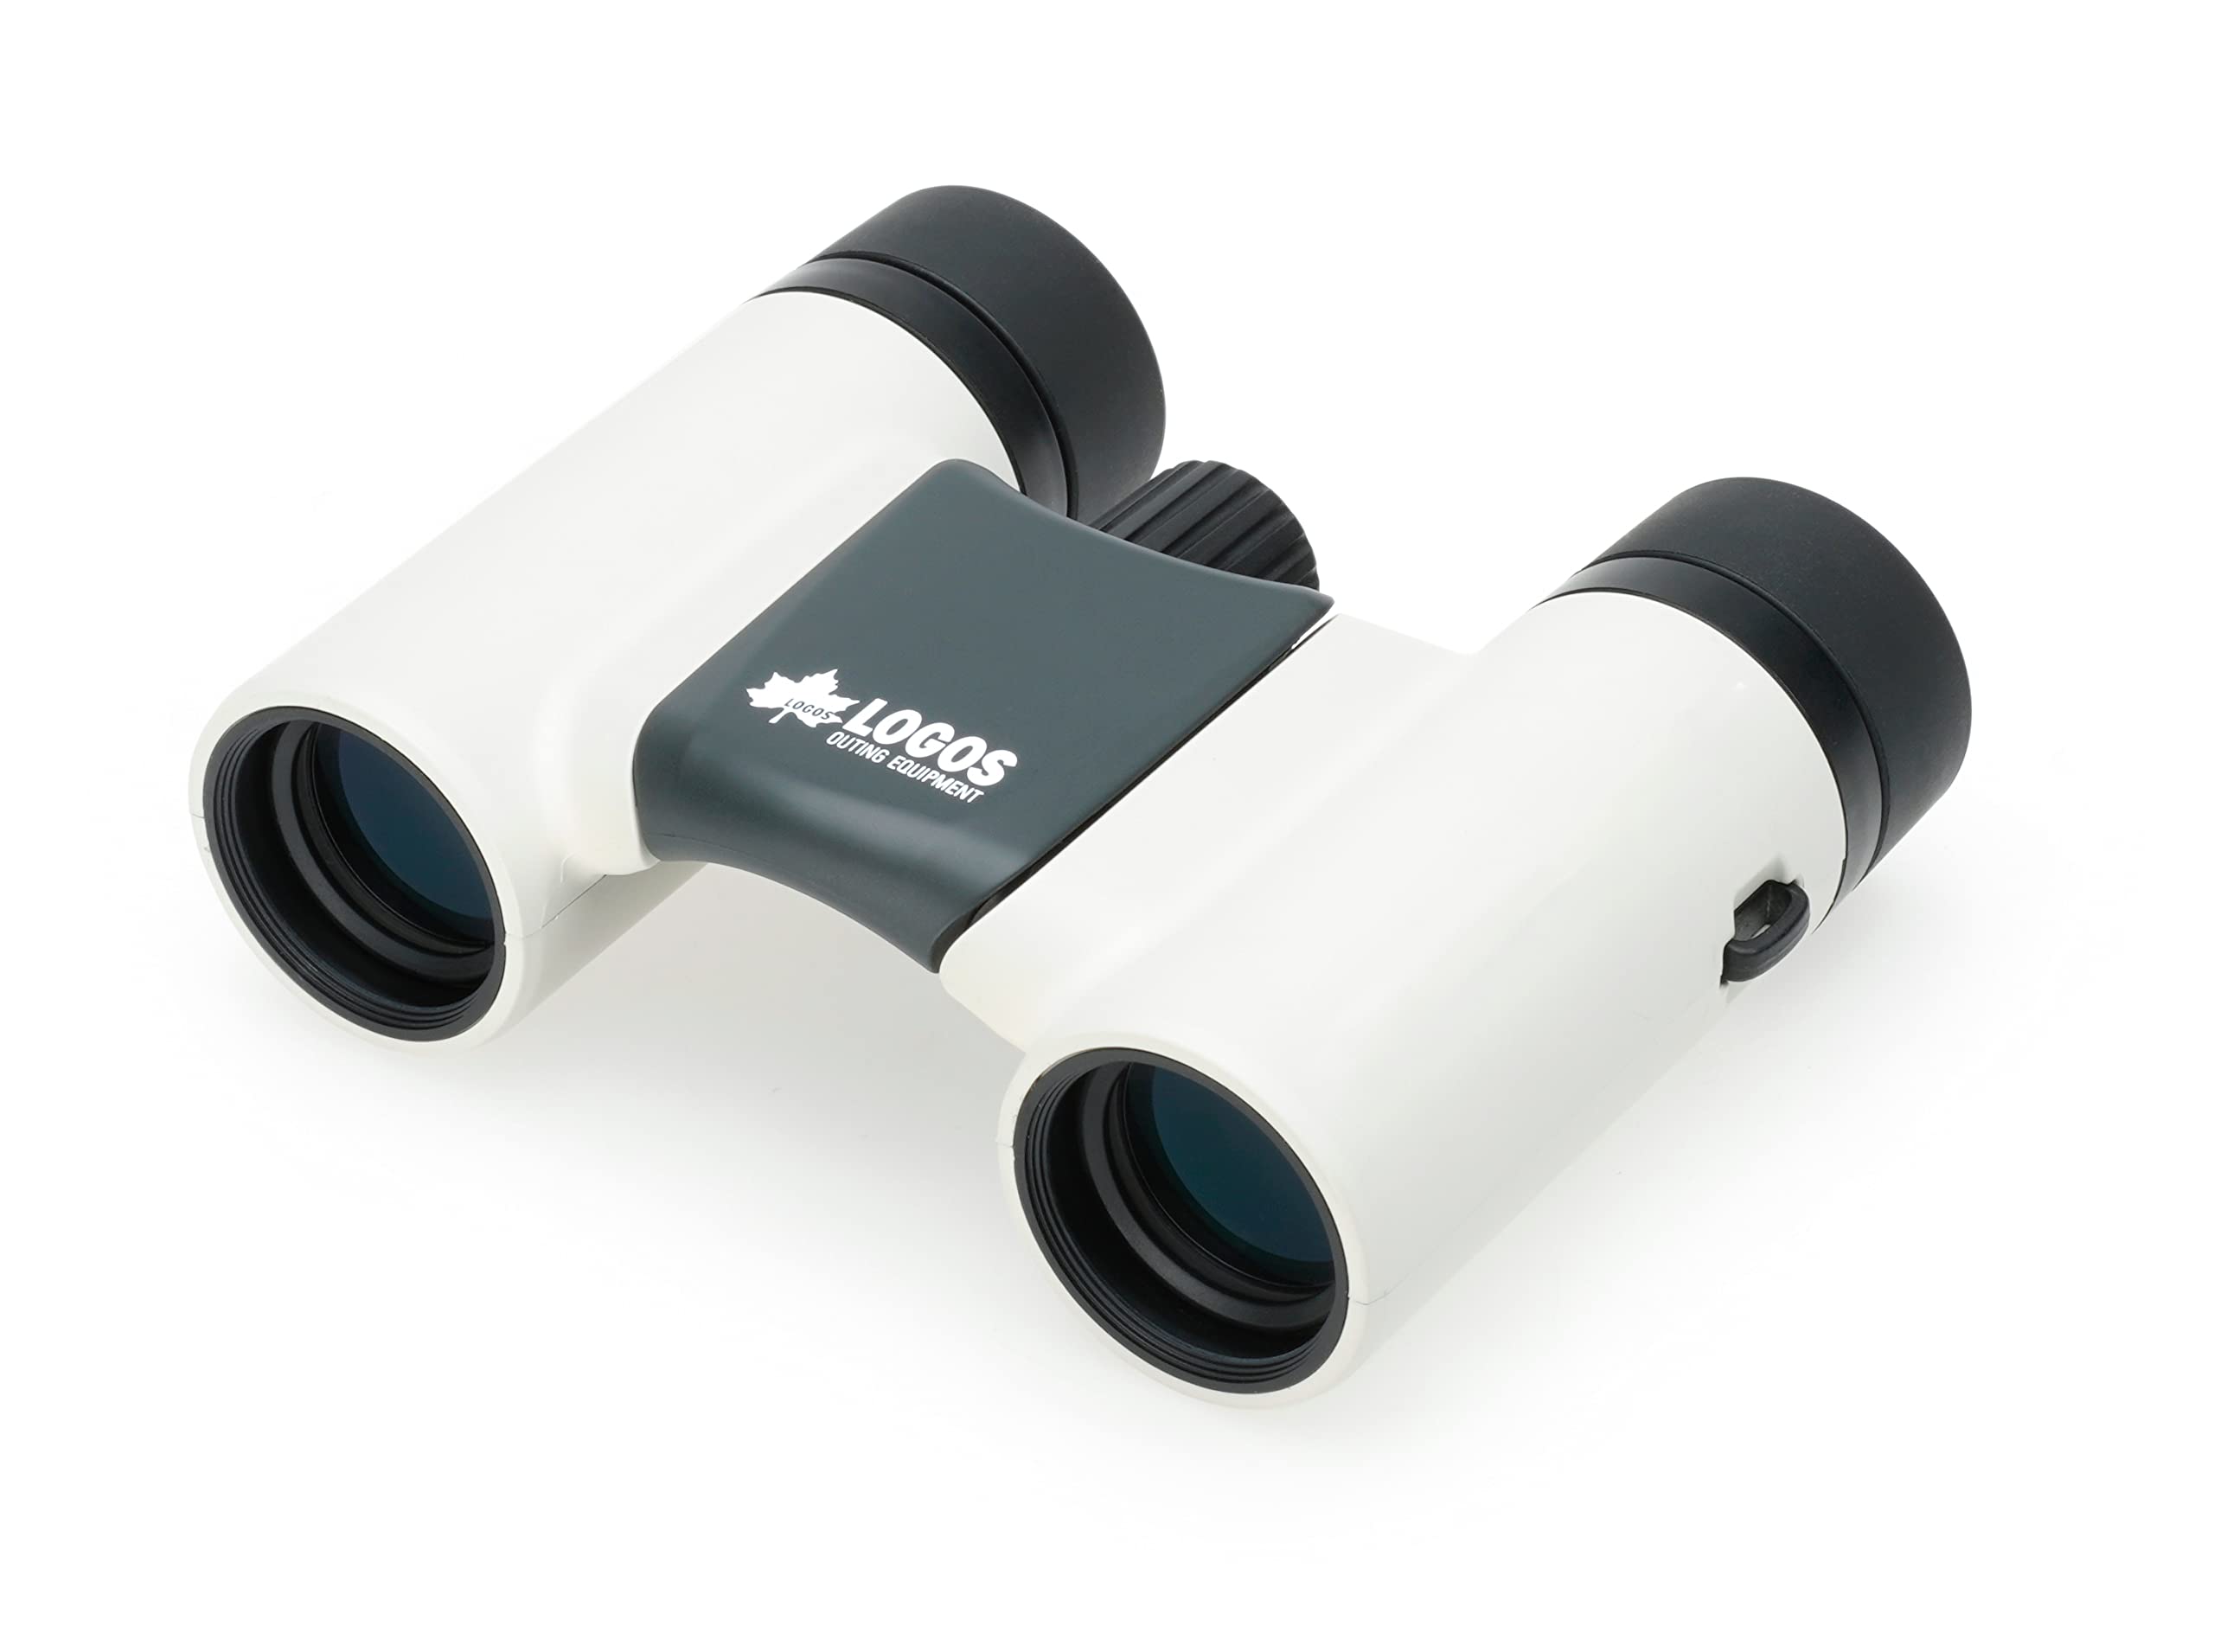 ケンコー 双眼鏡 LOGOS 8×21DH 倍率8倍 対物レンズ径21mm 2軸折りたたみ式 生活防水 170g軽量設計 グレ..